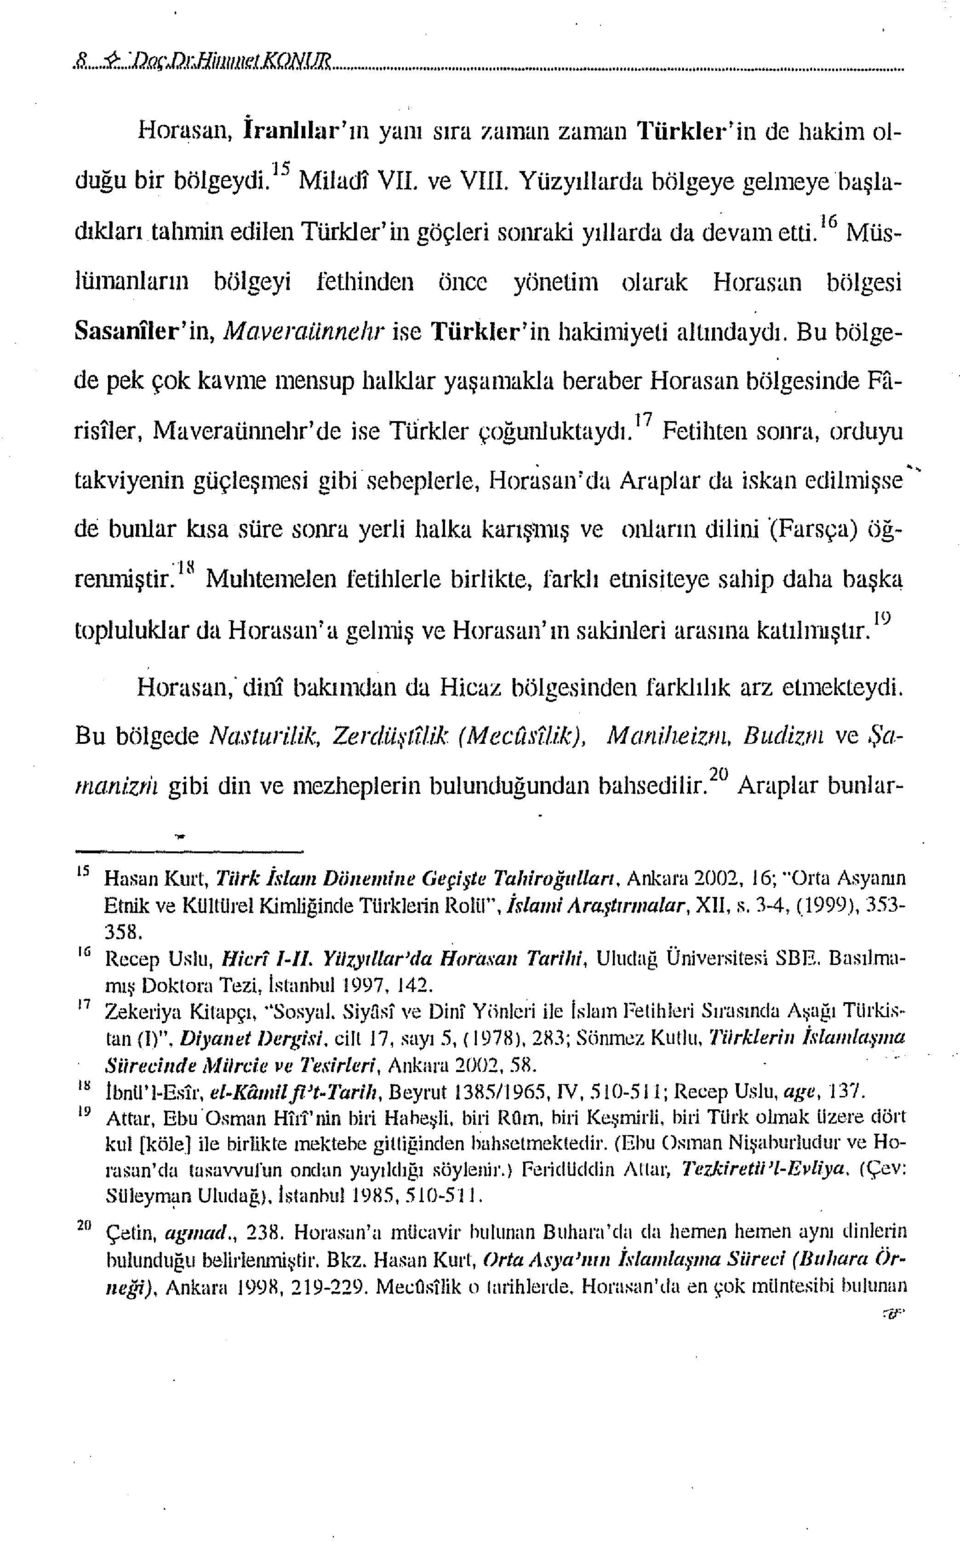 16 Müslümanların bölgeyi fethinden önce yönetim olarak Horasan bölgesi Sasaniler'in, Maveraiinnelır ise Türkler'in hakimiyeti altındaydı.